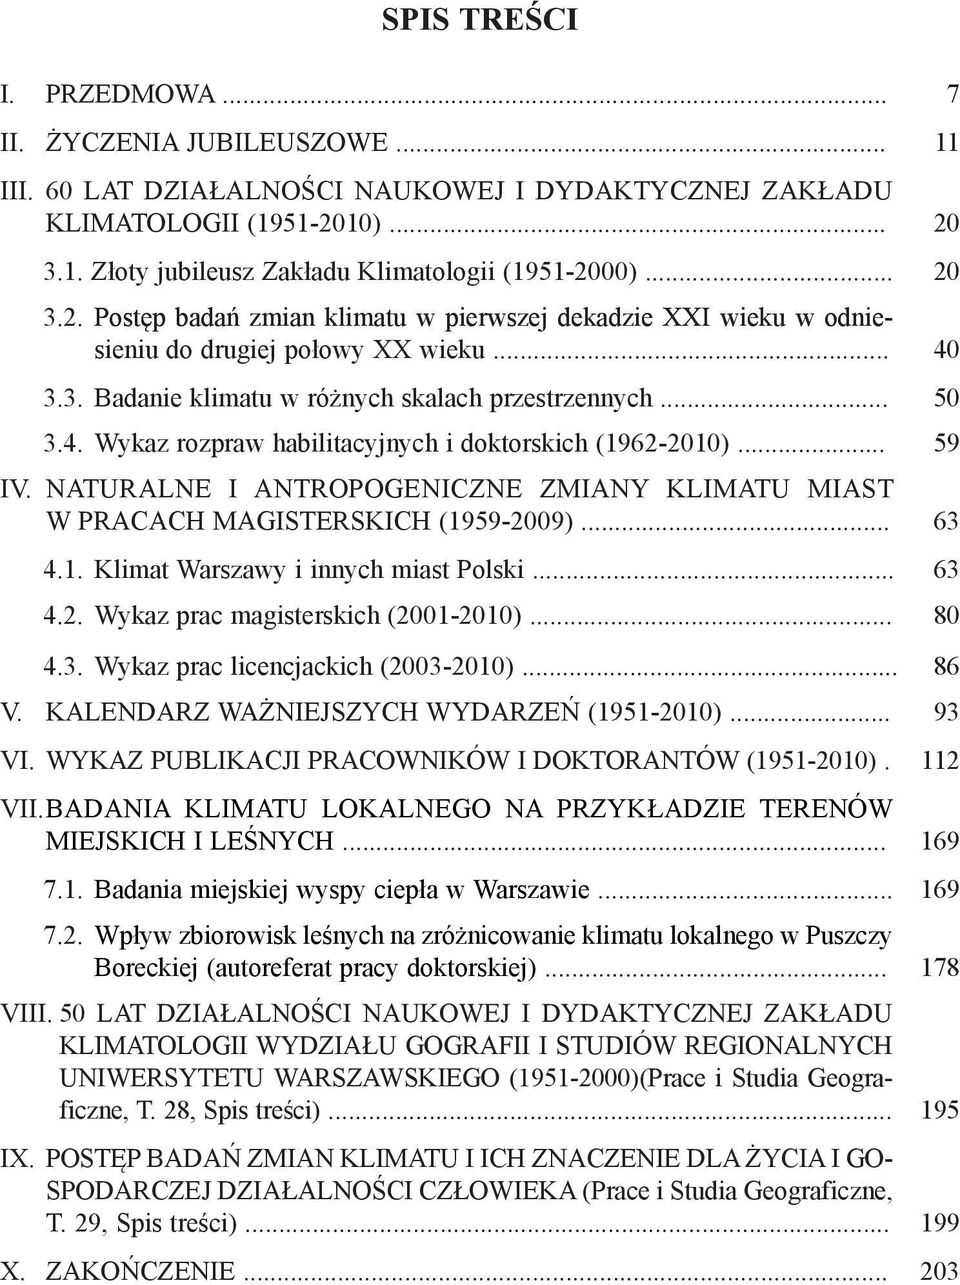 .. 59 IV. NATURALNE I ANTROPOGENICZNE ZMIANY KLIMATU MIAST W PRACACH MAGISTERSKICH (1959-2009)... 63 4.1. Klimat Warszawy i innych miast Polski... 63 4.2. Wykaz prac magisterskich (2001-2010)... 80 4.